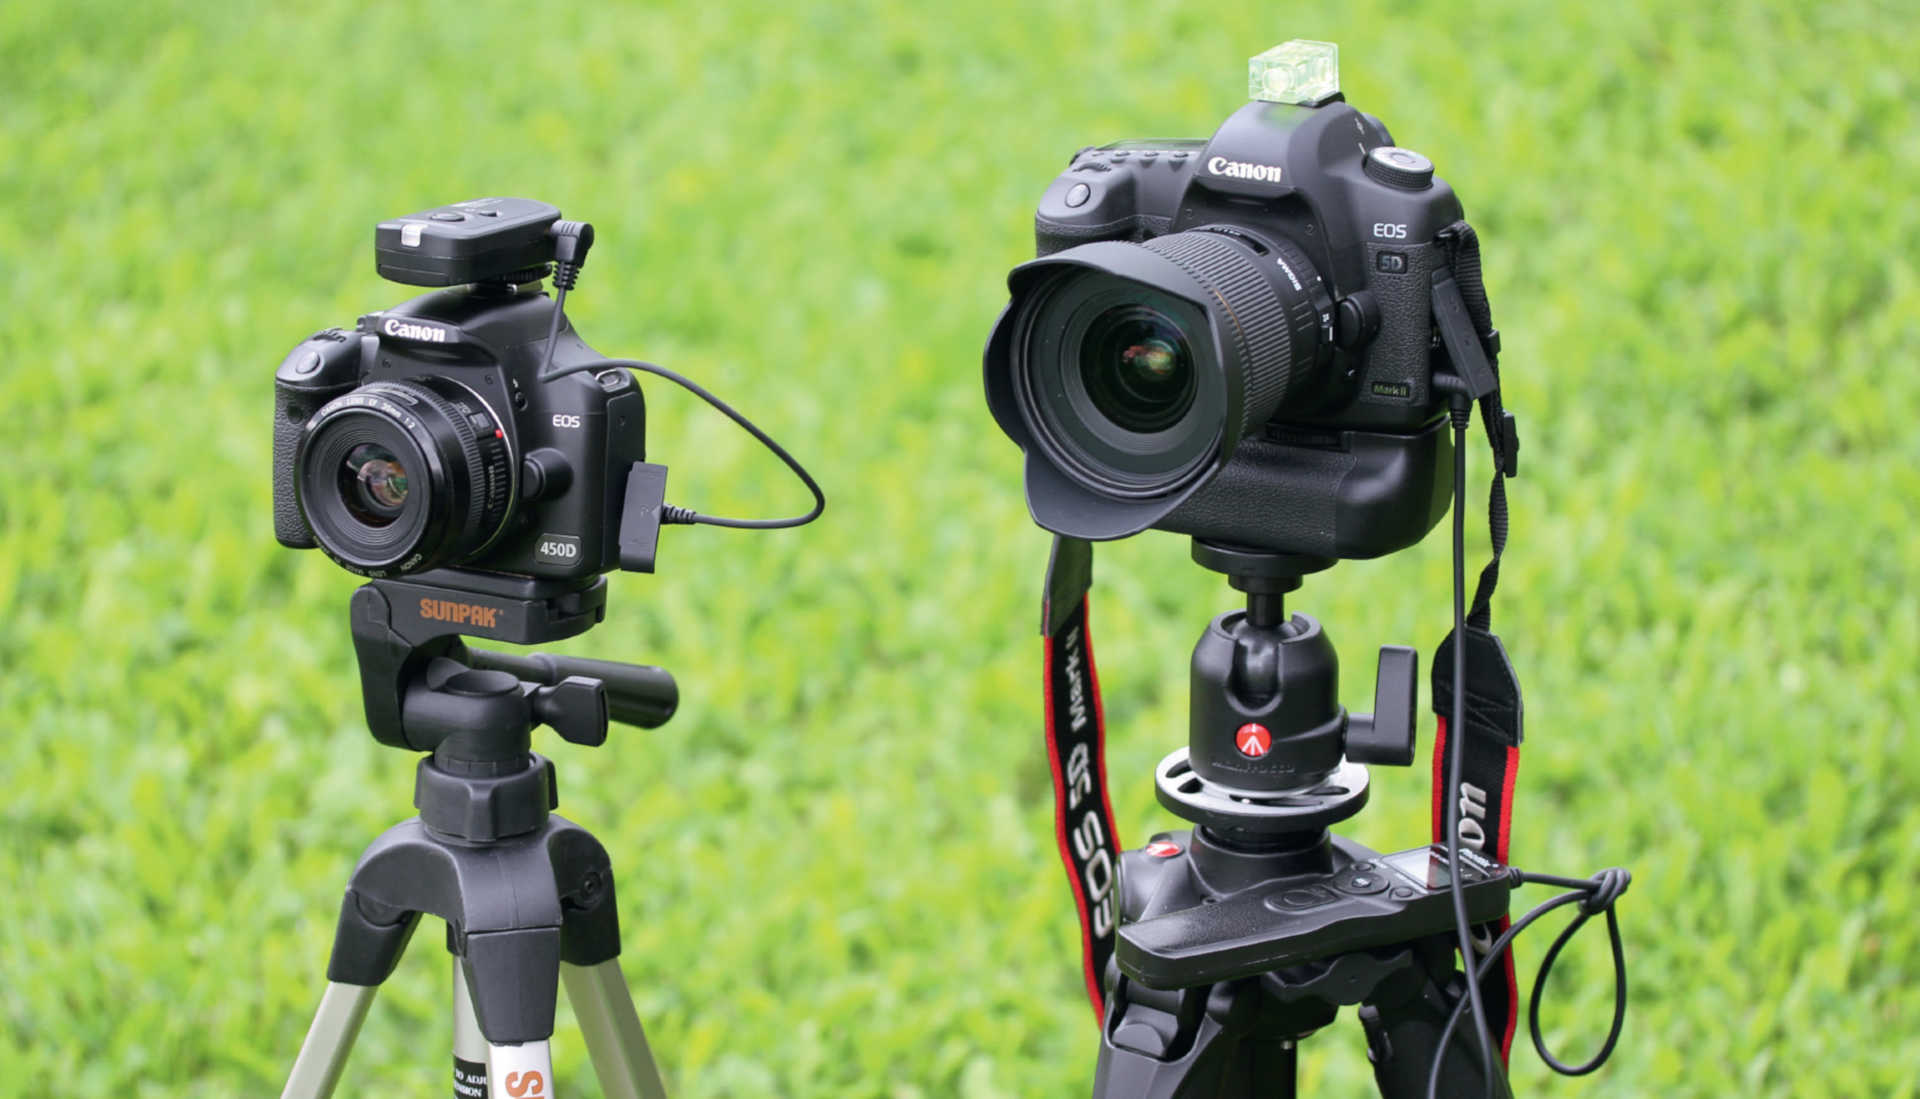 För att komma igång med fotografering av stjärnspår räcker det med en prisvärd kamera med vidvinkeloptik (på bilden till vänster ser du en Canon EOS 450D med ett prisvärt 35 mm objektiv), en fjärrutlösare (här används en trådlös fjärrutlösare) och ett prisvärt stativ. Engagerade astrofotografer kan använda en digital systemkamera med en sensor i fullformat tillsammans med ett ljusstarkt vidvinkelobjektiv (på bilden till höger en Canon 5D med ett 20 mm objektiv och bländare 1,8). Det anslutna batterigreppet gör det möjligt med längre fotoserier, som den programmerbara fjärrutlösaren hanterar självständigt. U. Dittler